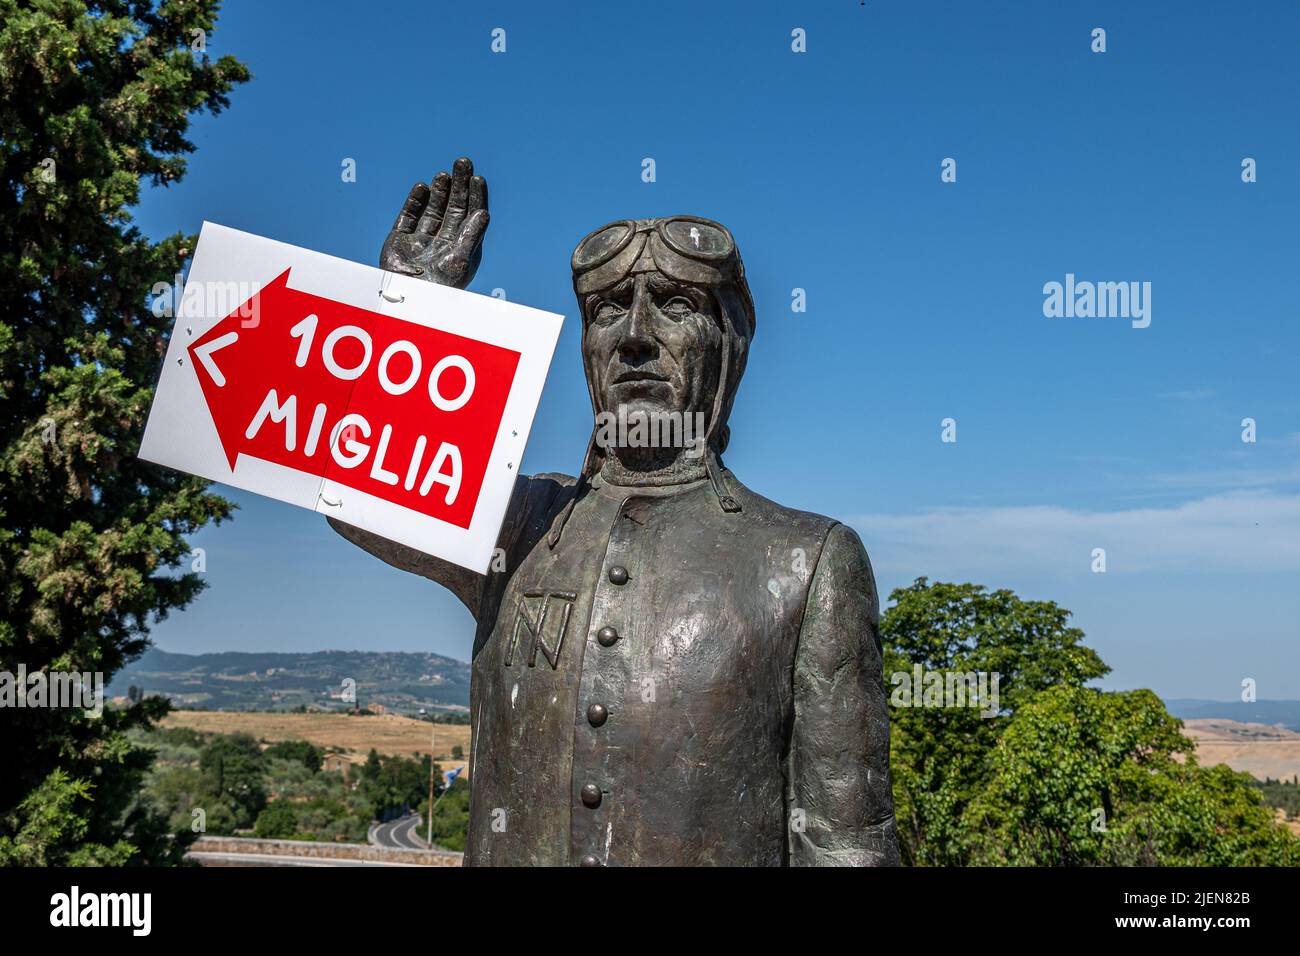 La statue commémorative de Tazio Nuvolari avec un panneau publicitaire de la course de route mille Miglia, San Quirico d'Orcia, Toscane, Italie Banque D'Images